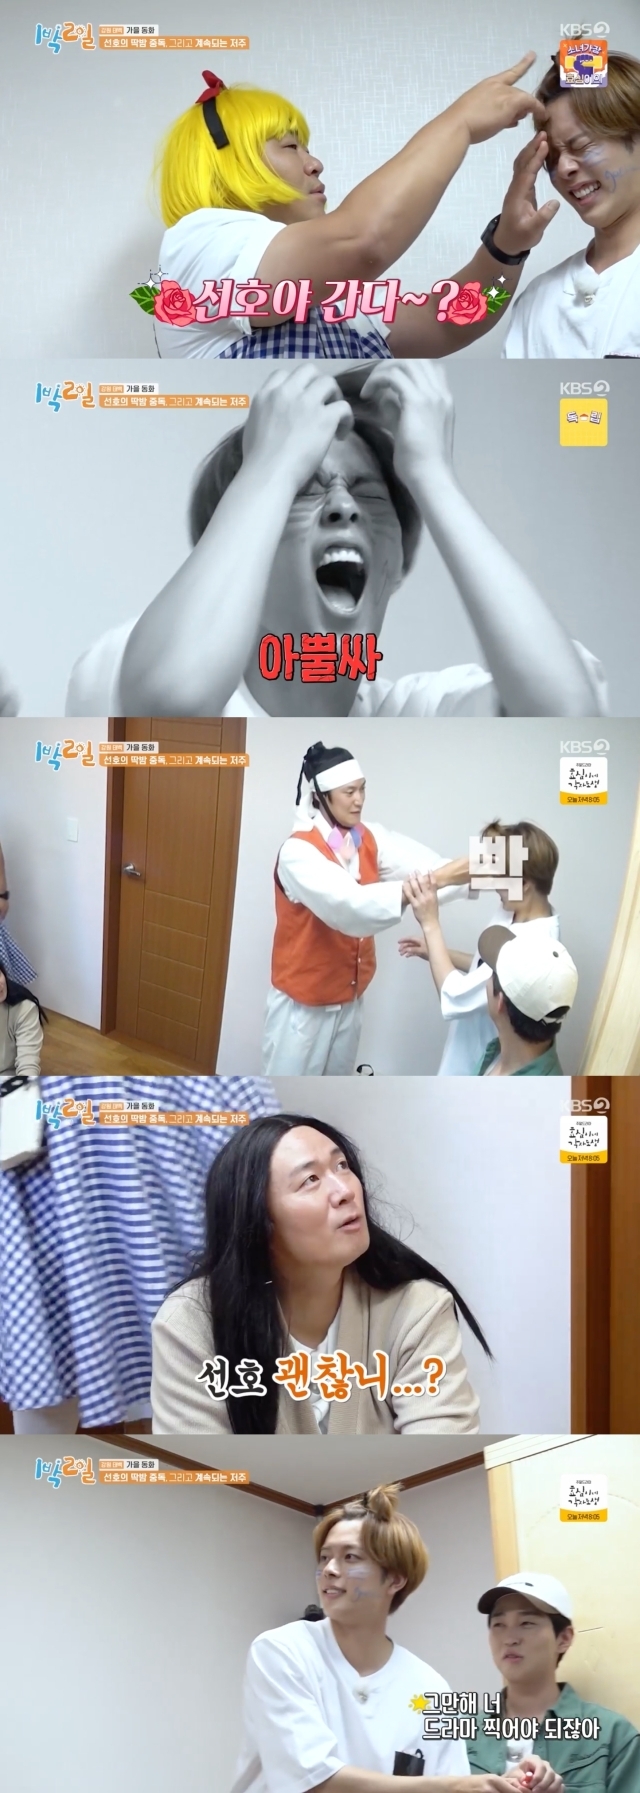 딱밤 내기를 계속하는 유선호와 만류하는 멤버들 / KBS2TV ‘1박 2일 시즌4’ 방송 캡처